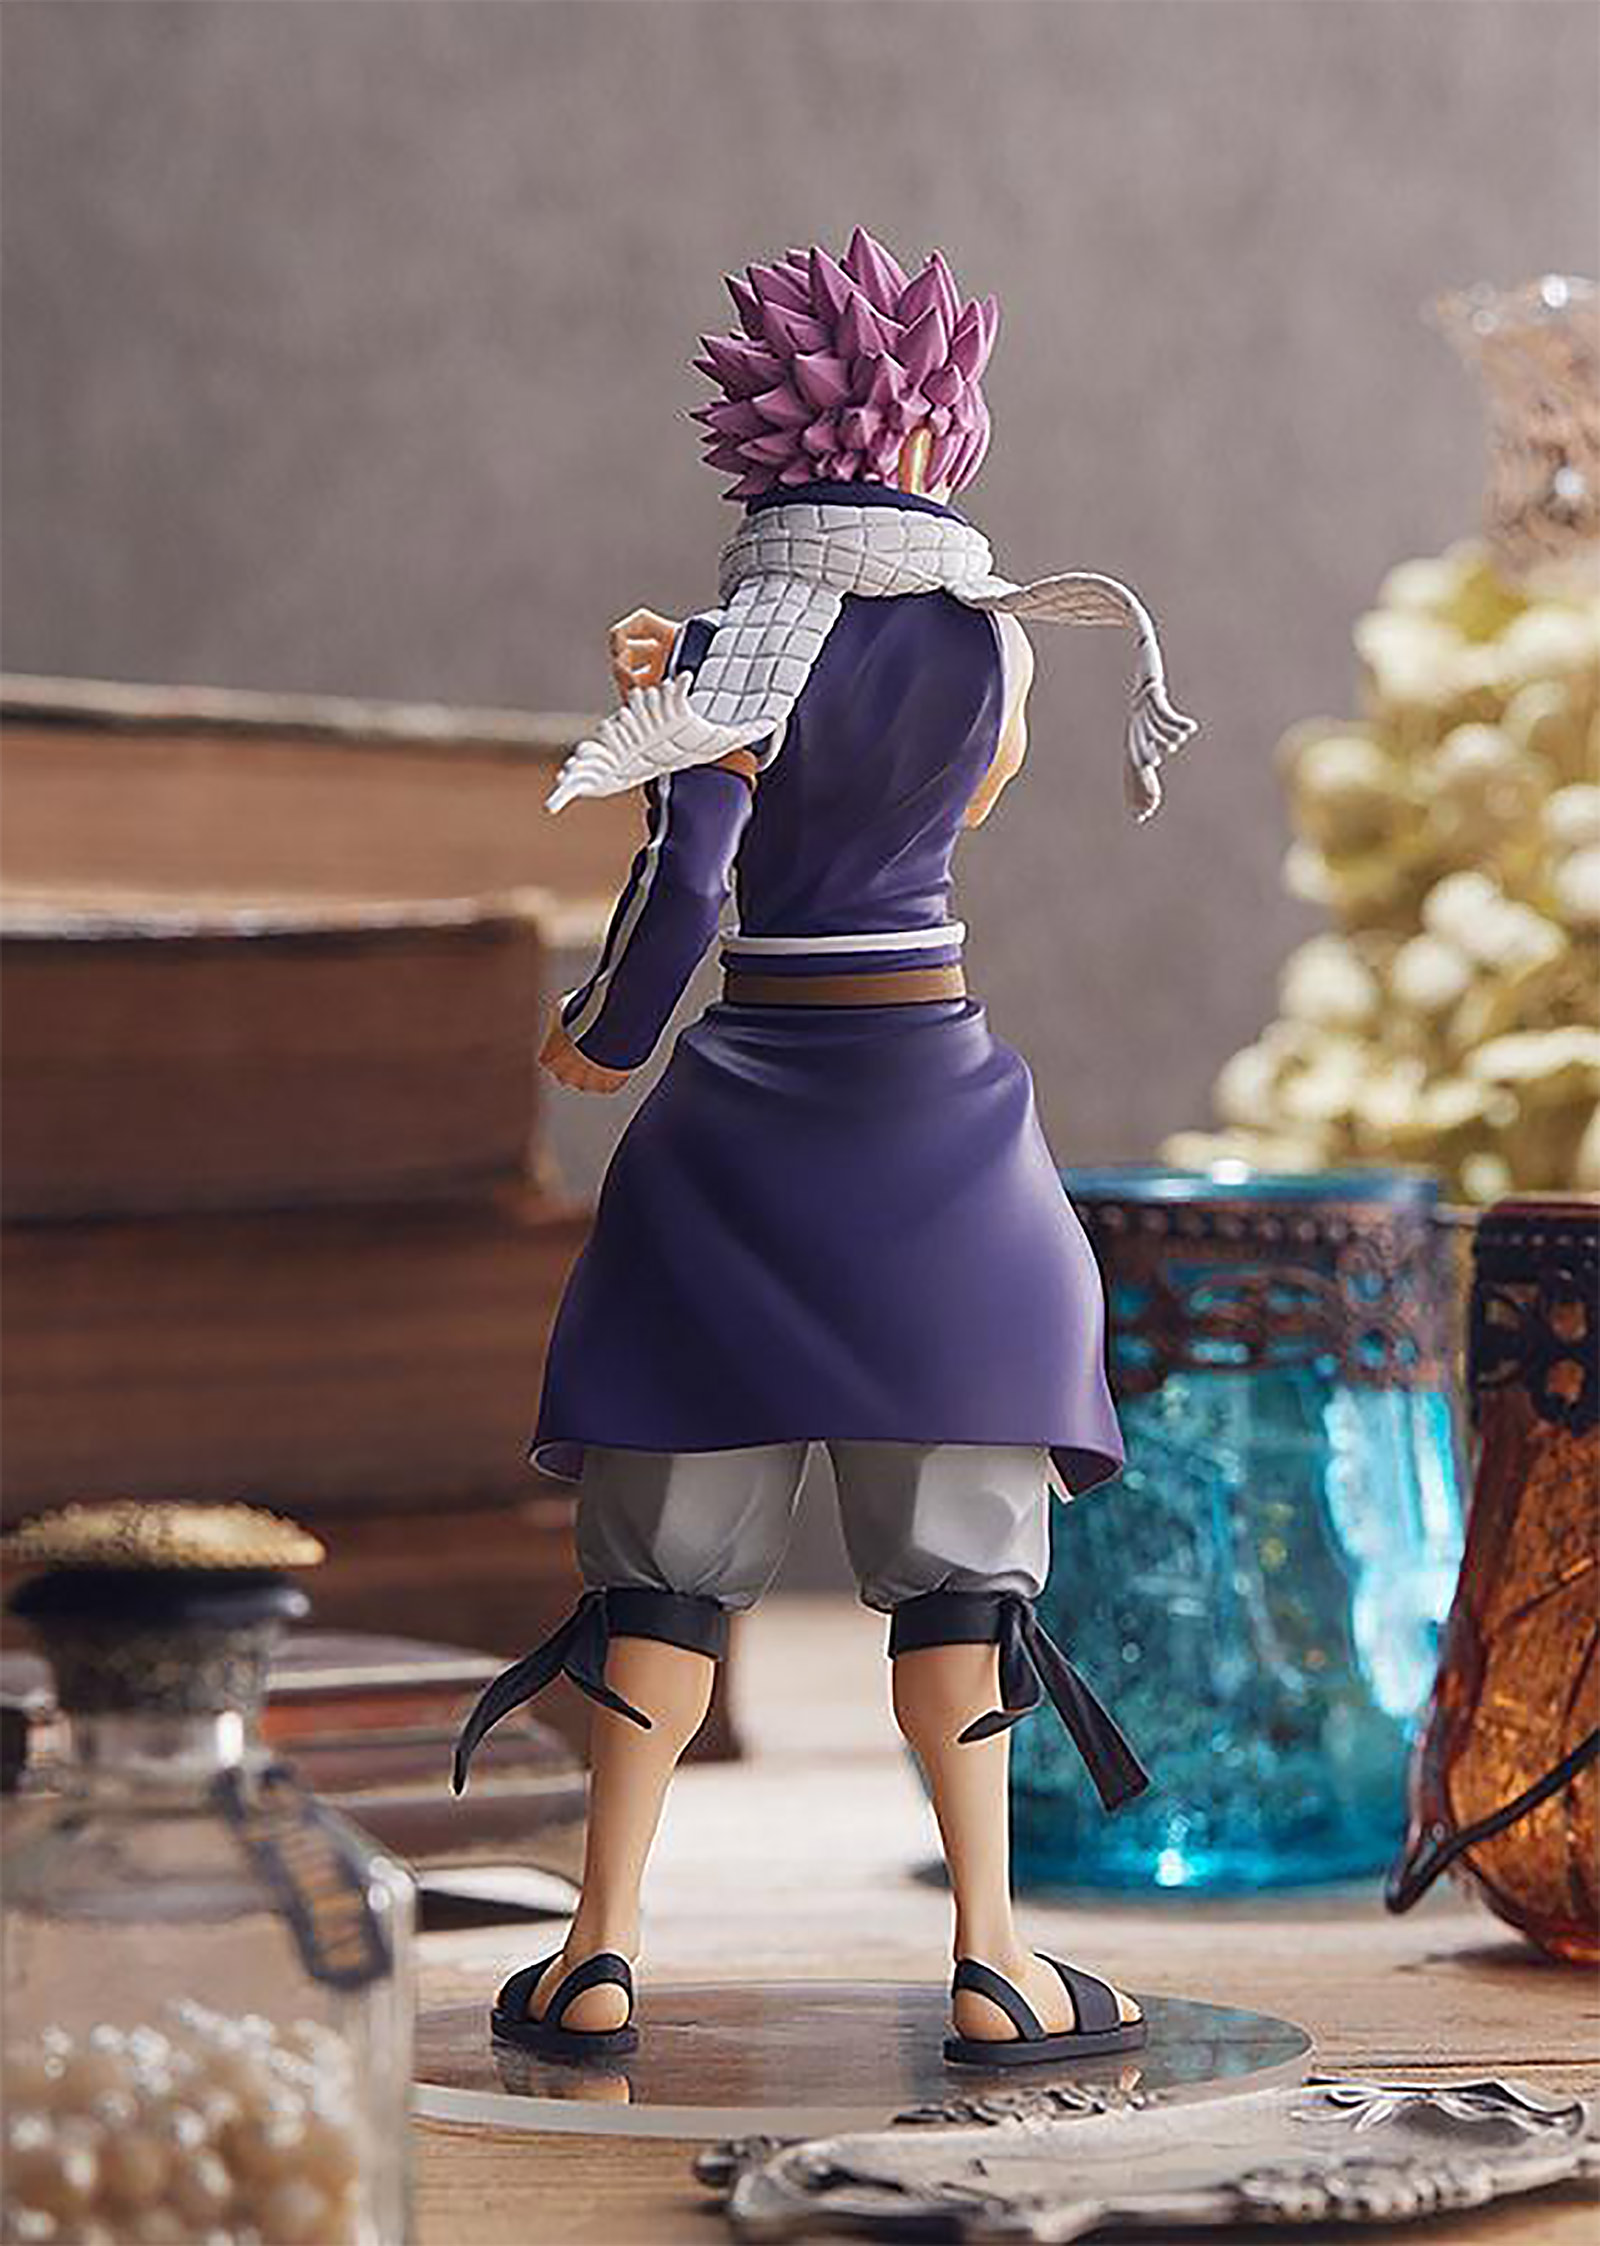 Fairy Tail - Figurine de Natsu Dragneel